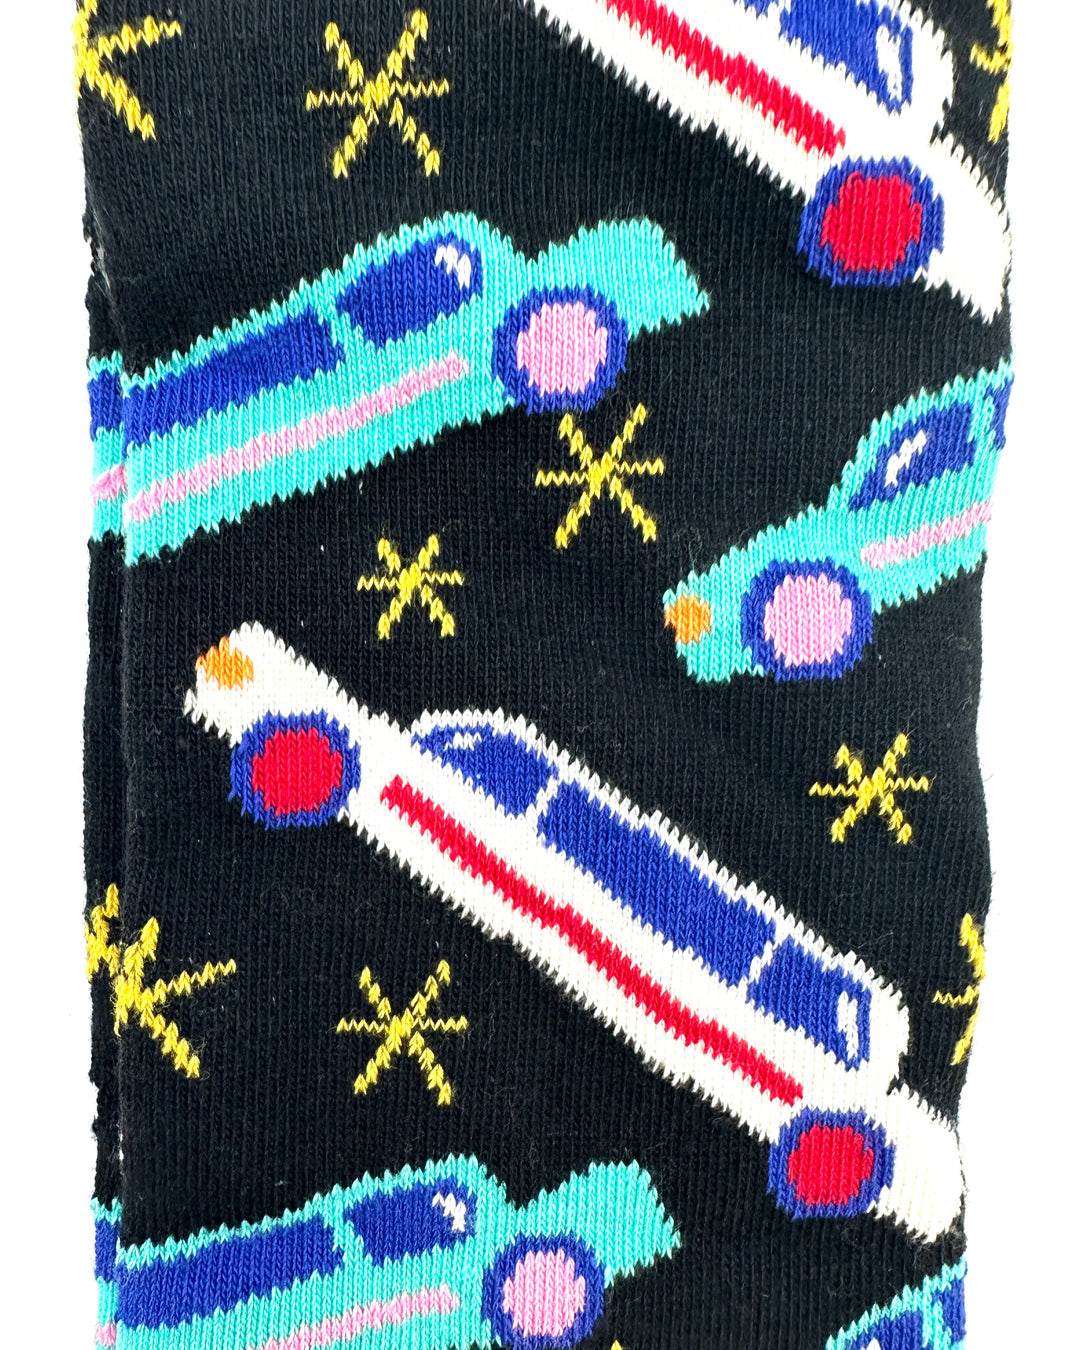 Limo Print Socks - Mens Size 8-12